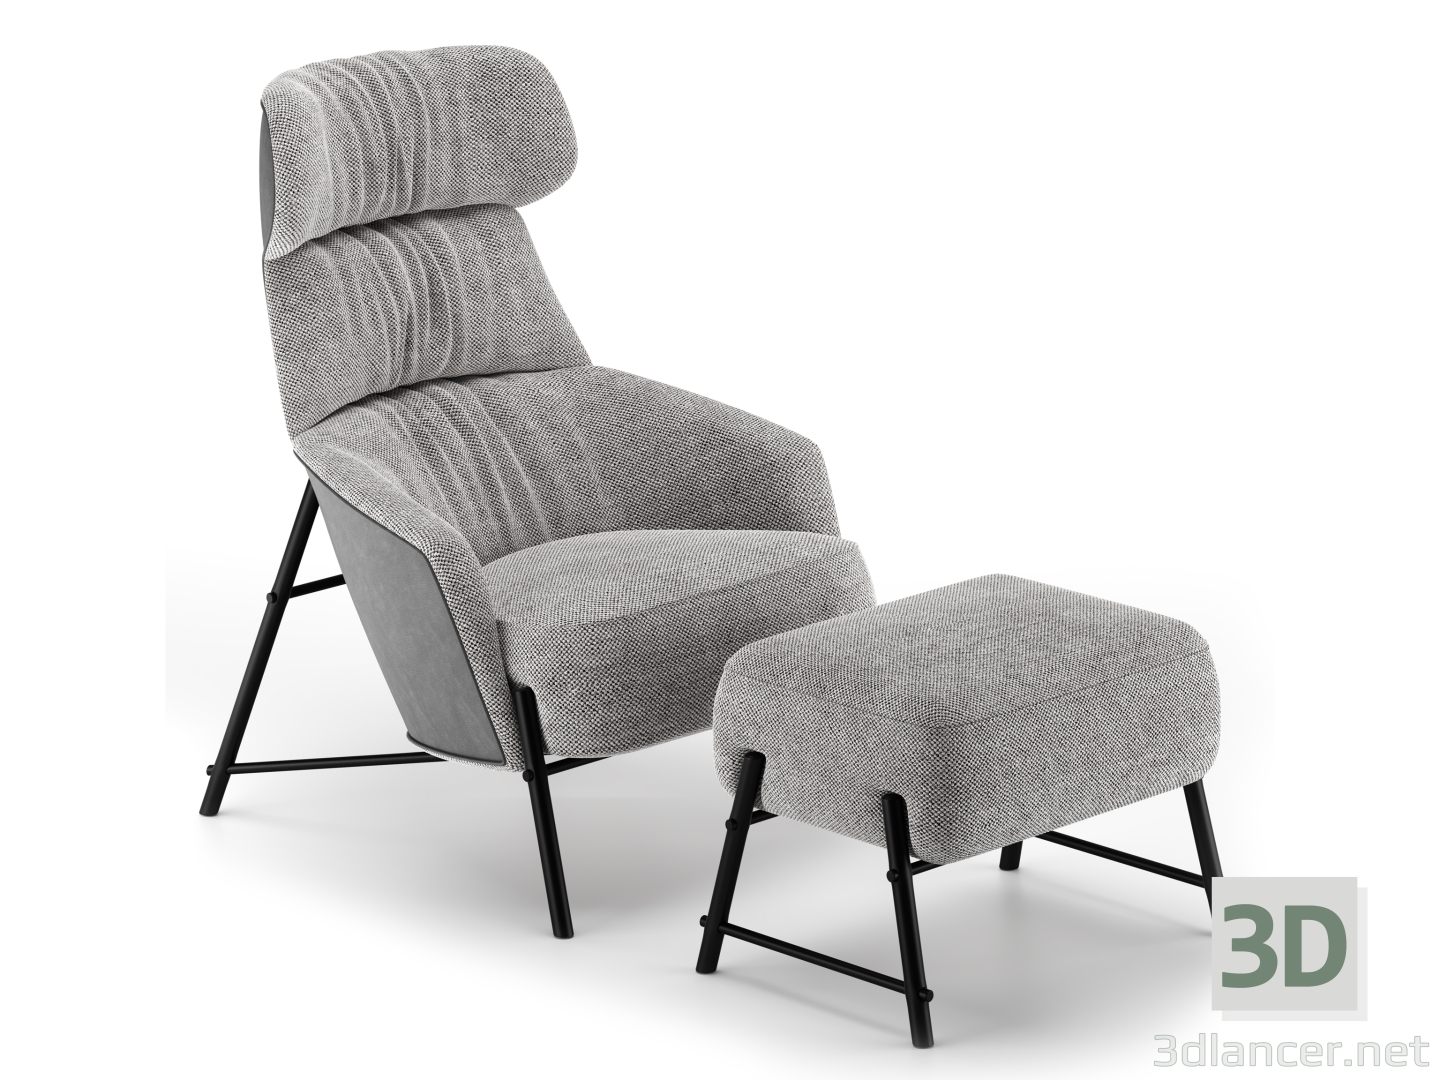 Hubert-Sessel 3D-Modell kaufen - Rendern